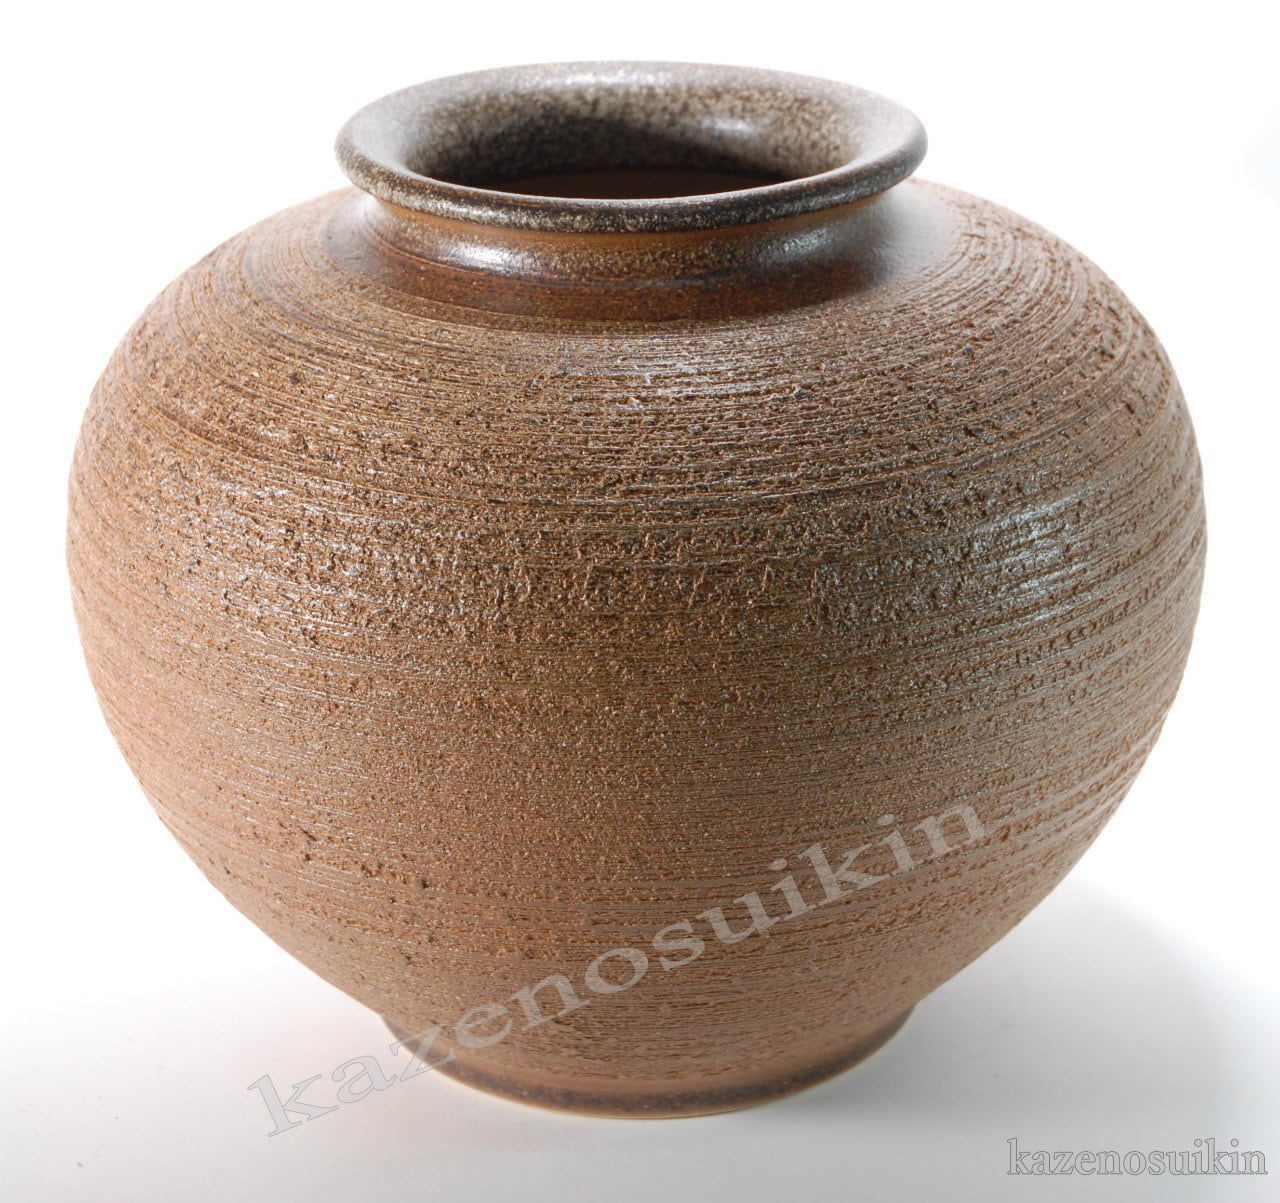 信楽焼陶器 花器 窯肌松皮富士口花瓶 16号 高さ49.0cm 7018-03